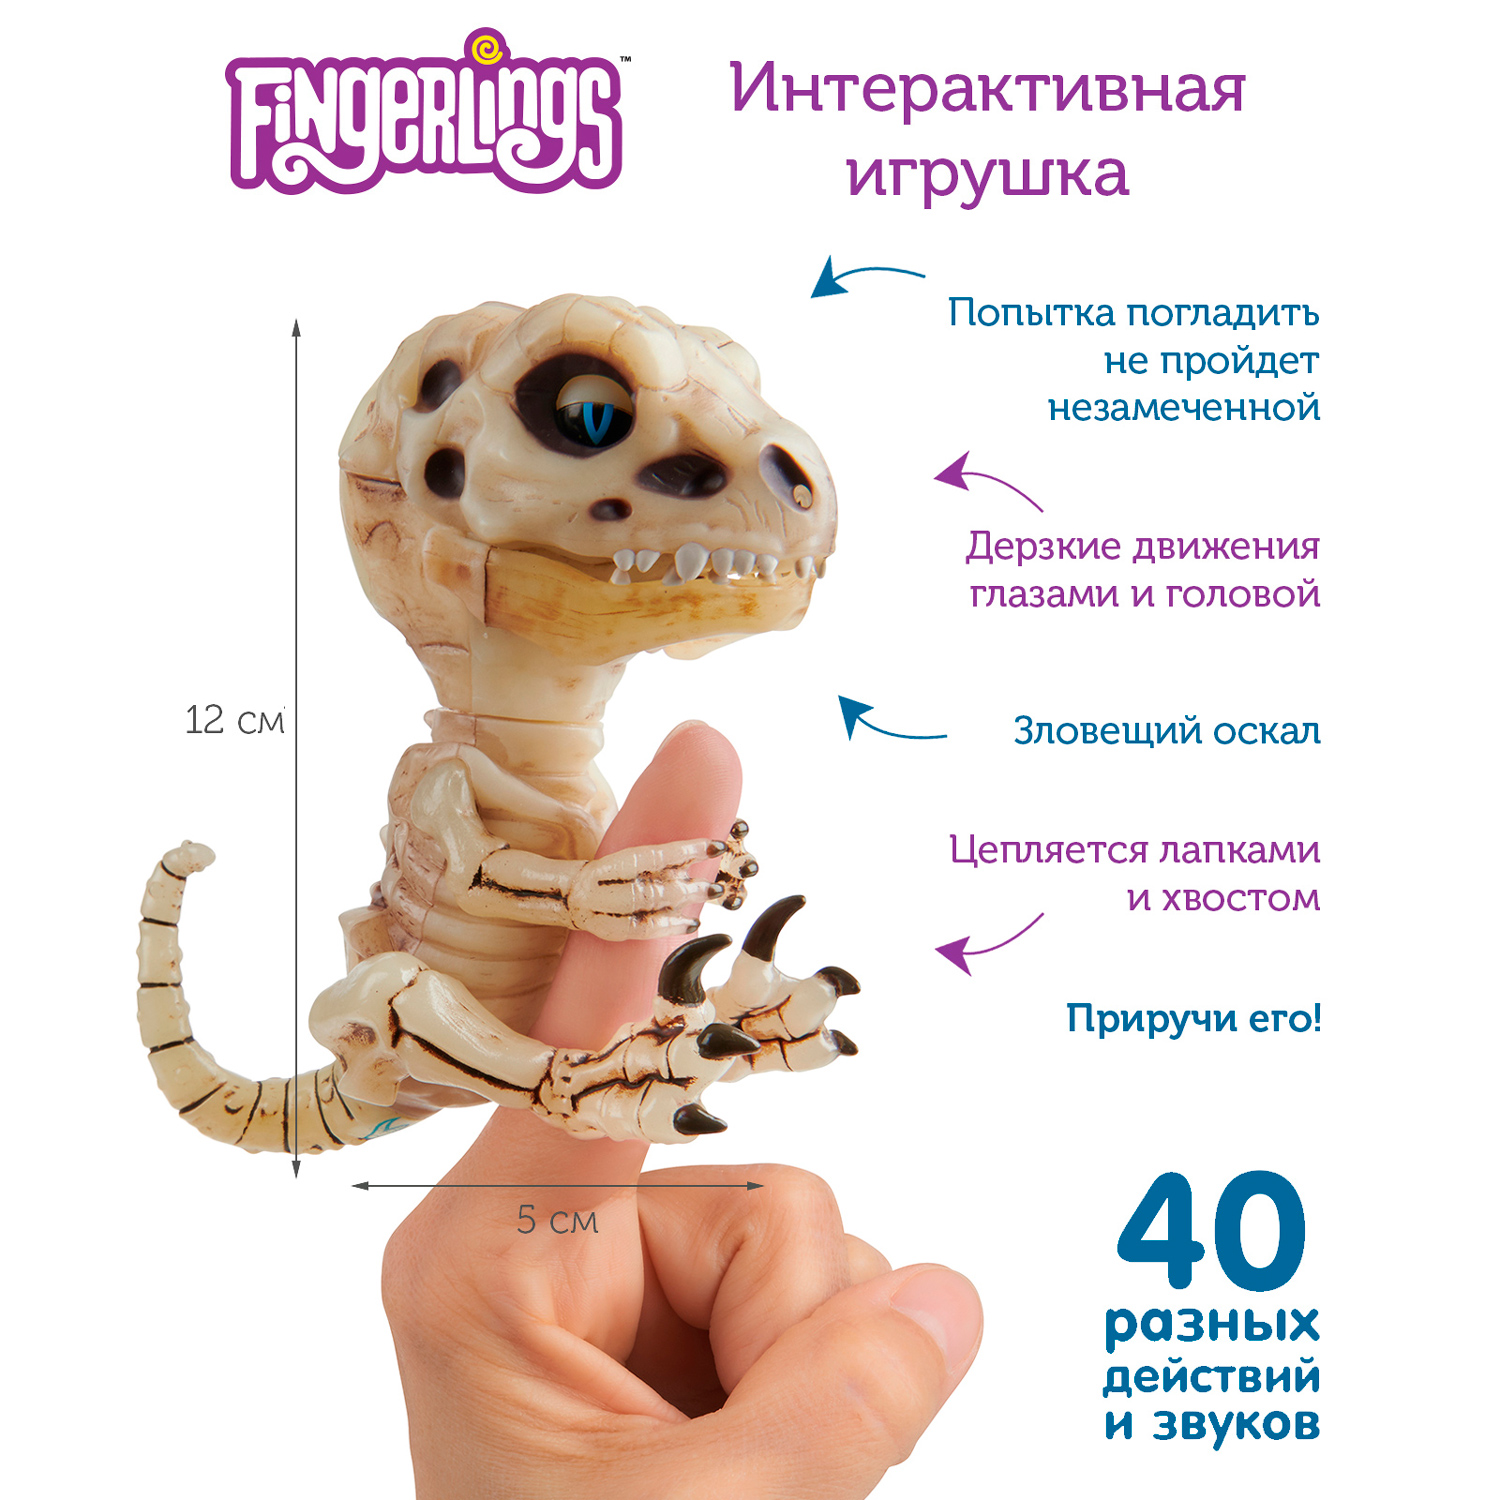 Интерактивная игрушка Fingerlings Скелетон Глуум 3982 - фото 1